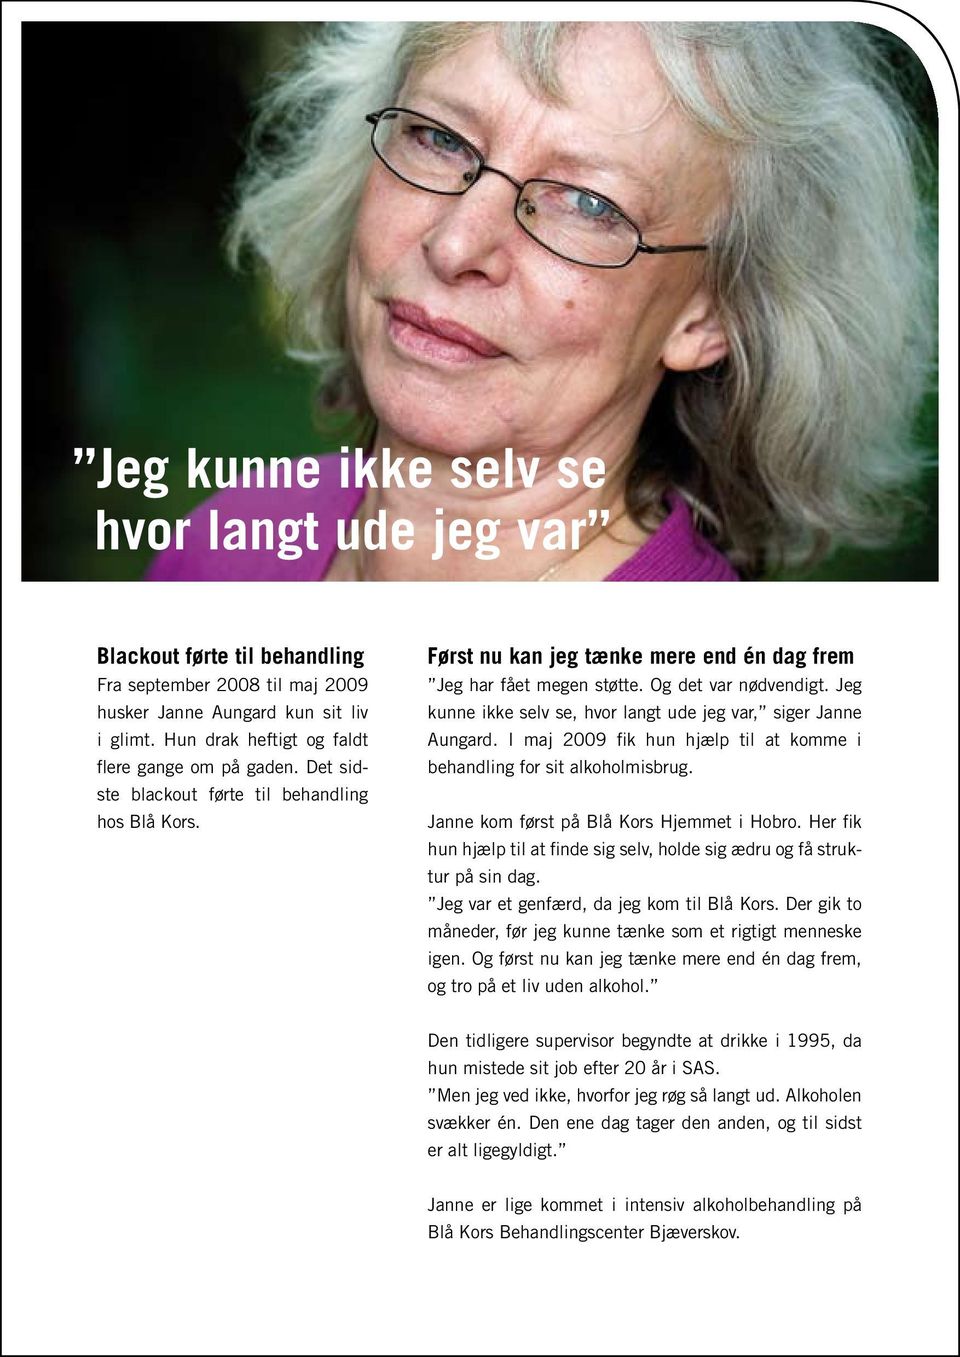 Jeg kunne ikke selv se, hvor langt ude jeg var, siger Janne Aungard. I maj 2009 fik hun hjælp til at komme i behandling for sit alkoholmisbrug. Janne kom først på Blå Kors Hjemmet i Hobro.